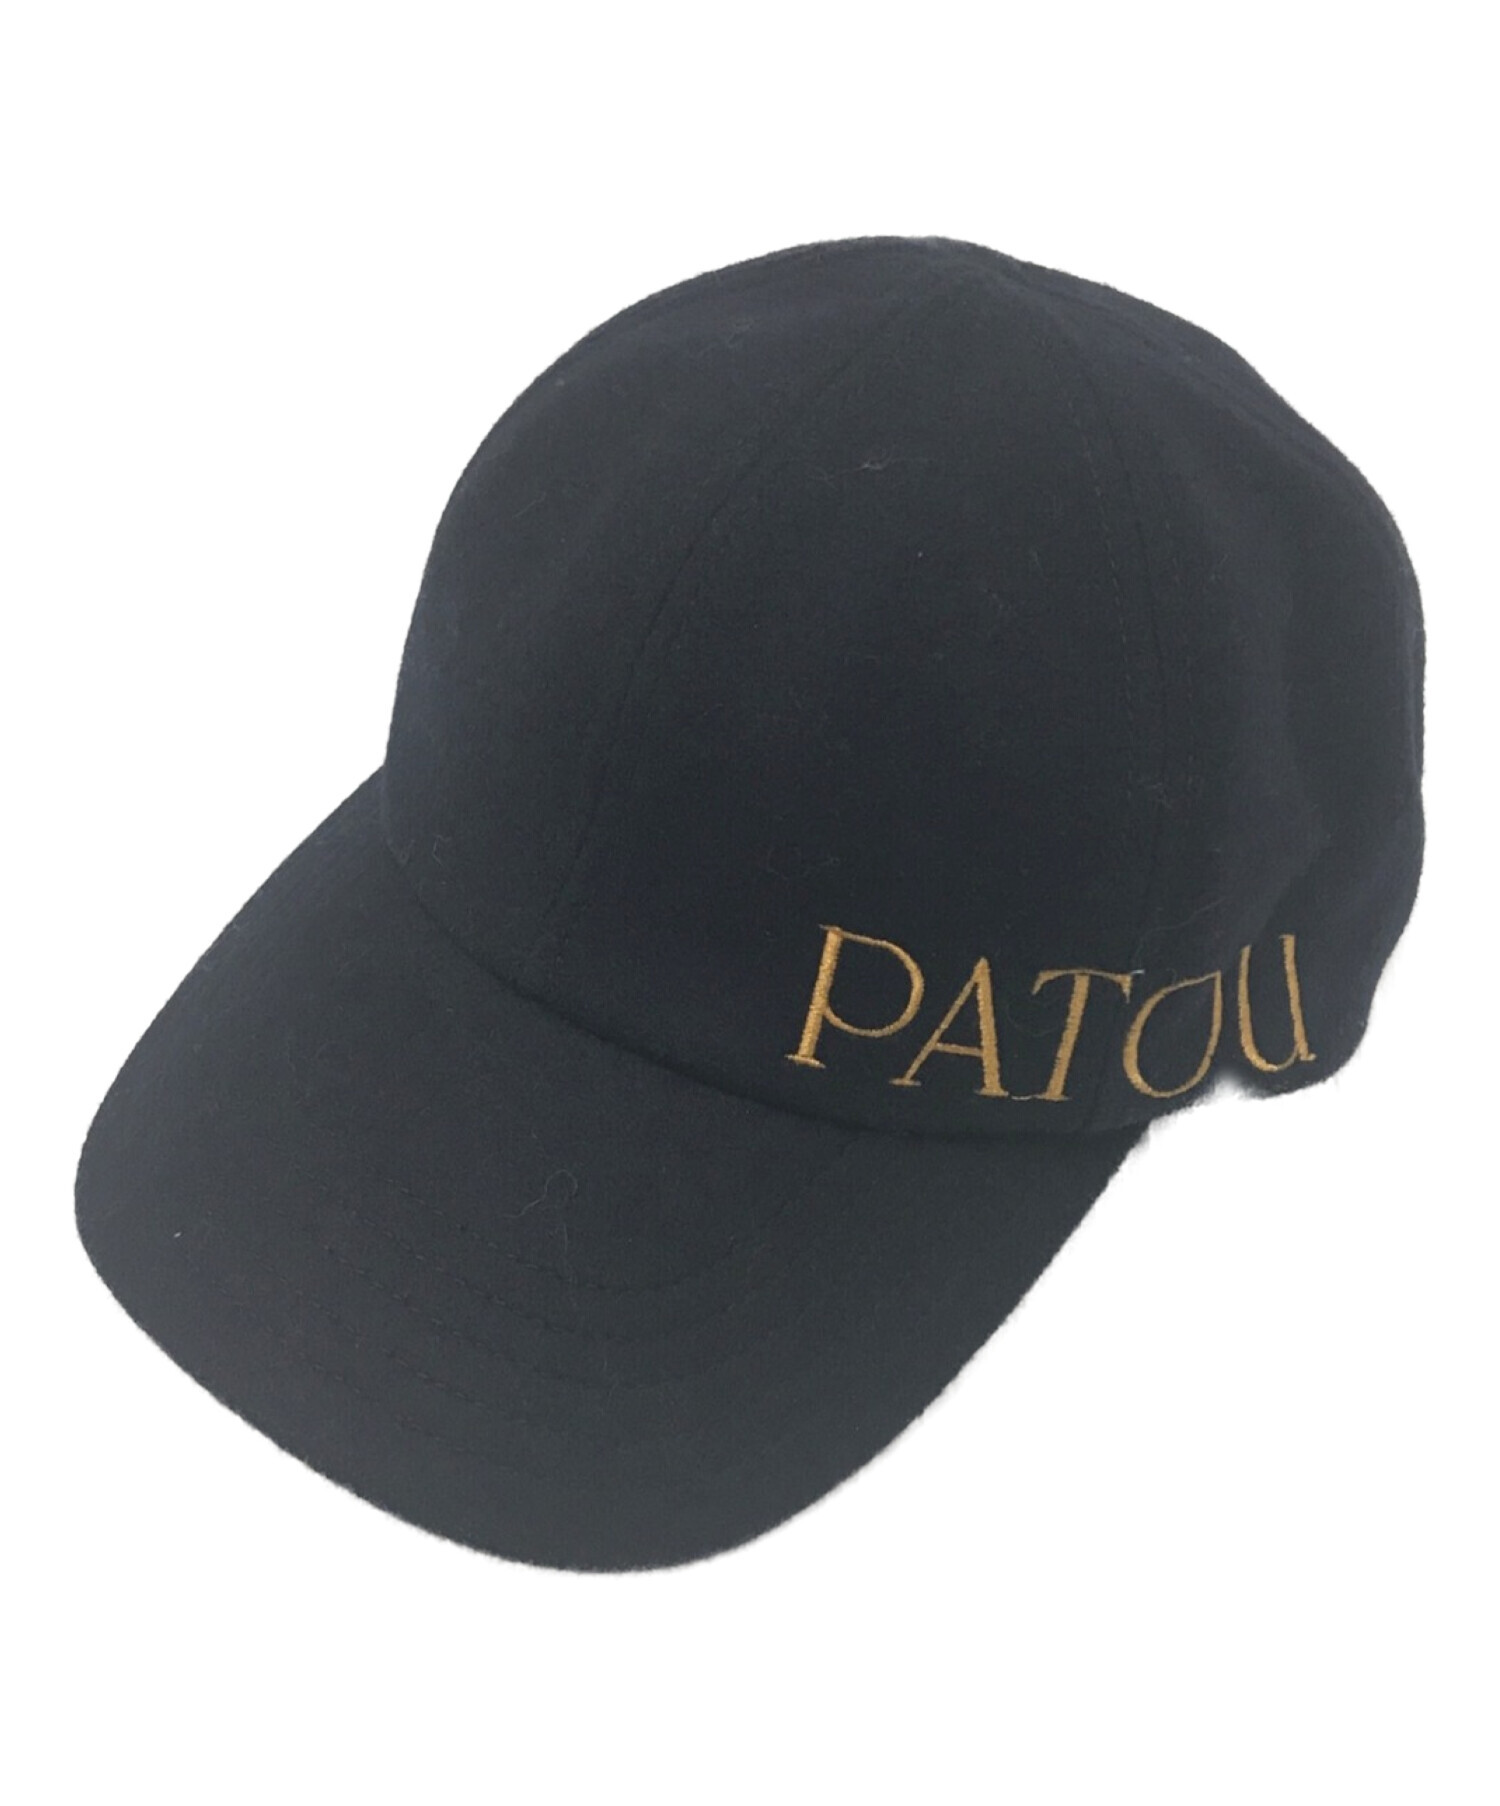 中古・古着通販】patou (パトゥ) embroidered felt cap ネイビー 